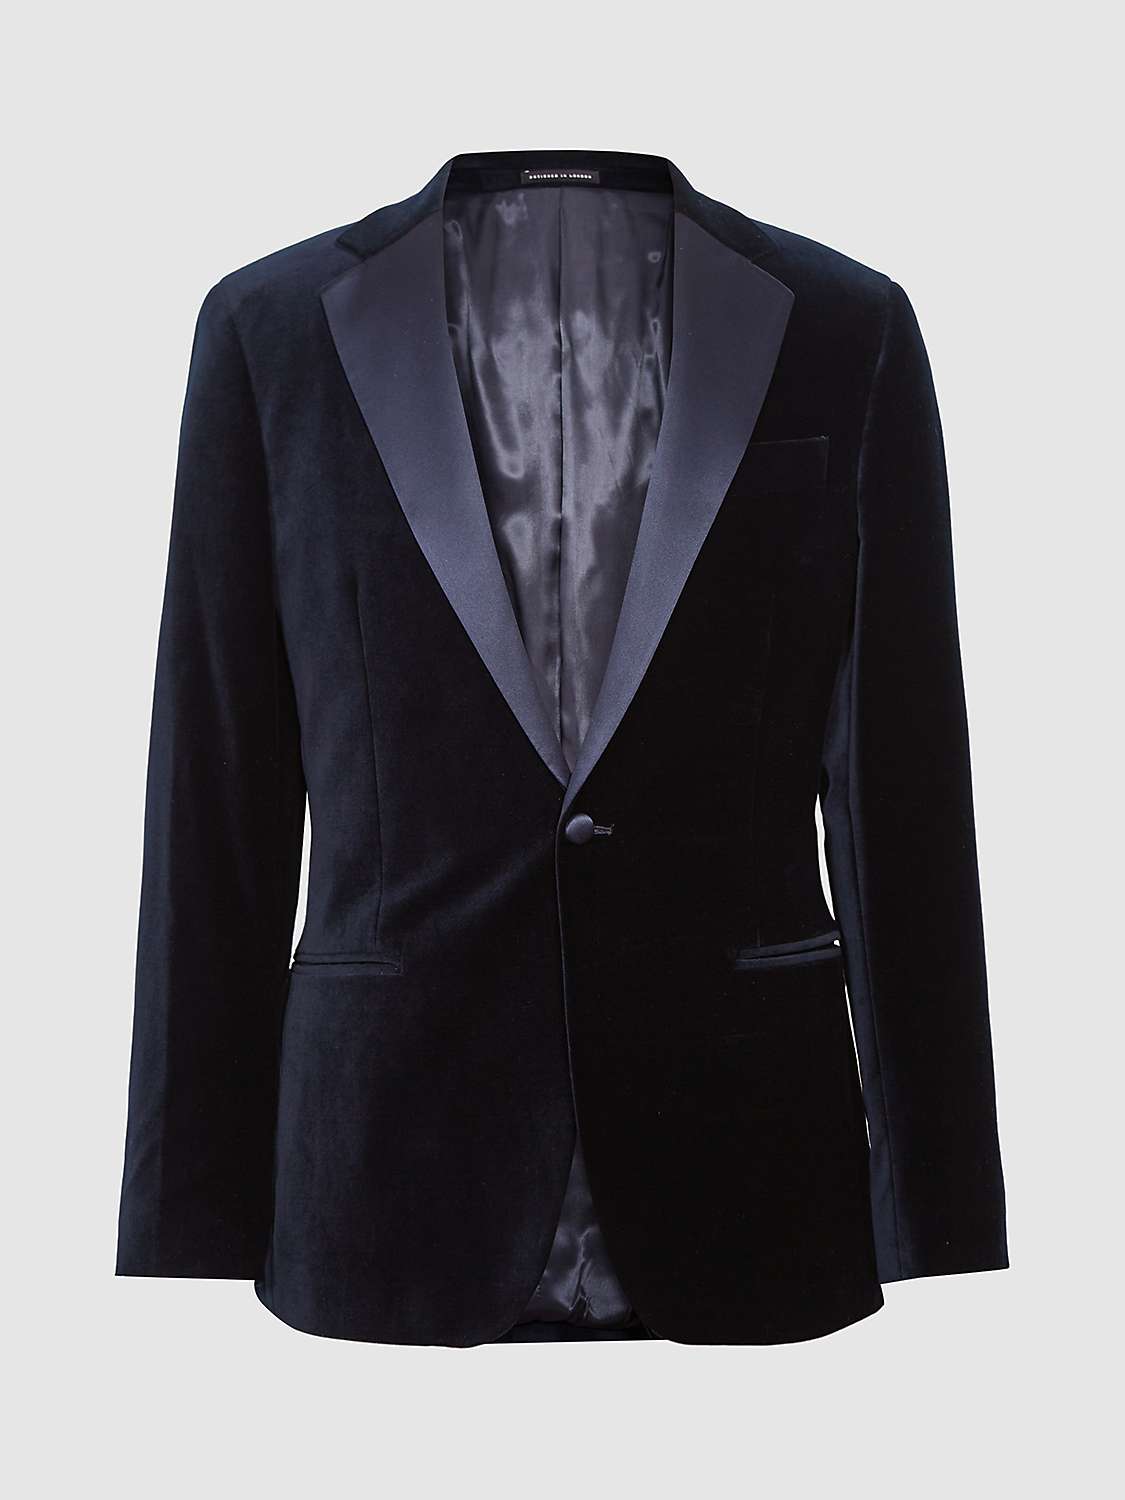 Reiss Ace Velvet Dinner Suit Jacket, Navy at John Lewis & Partners